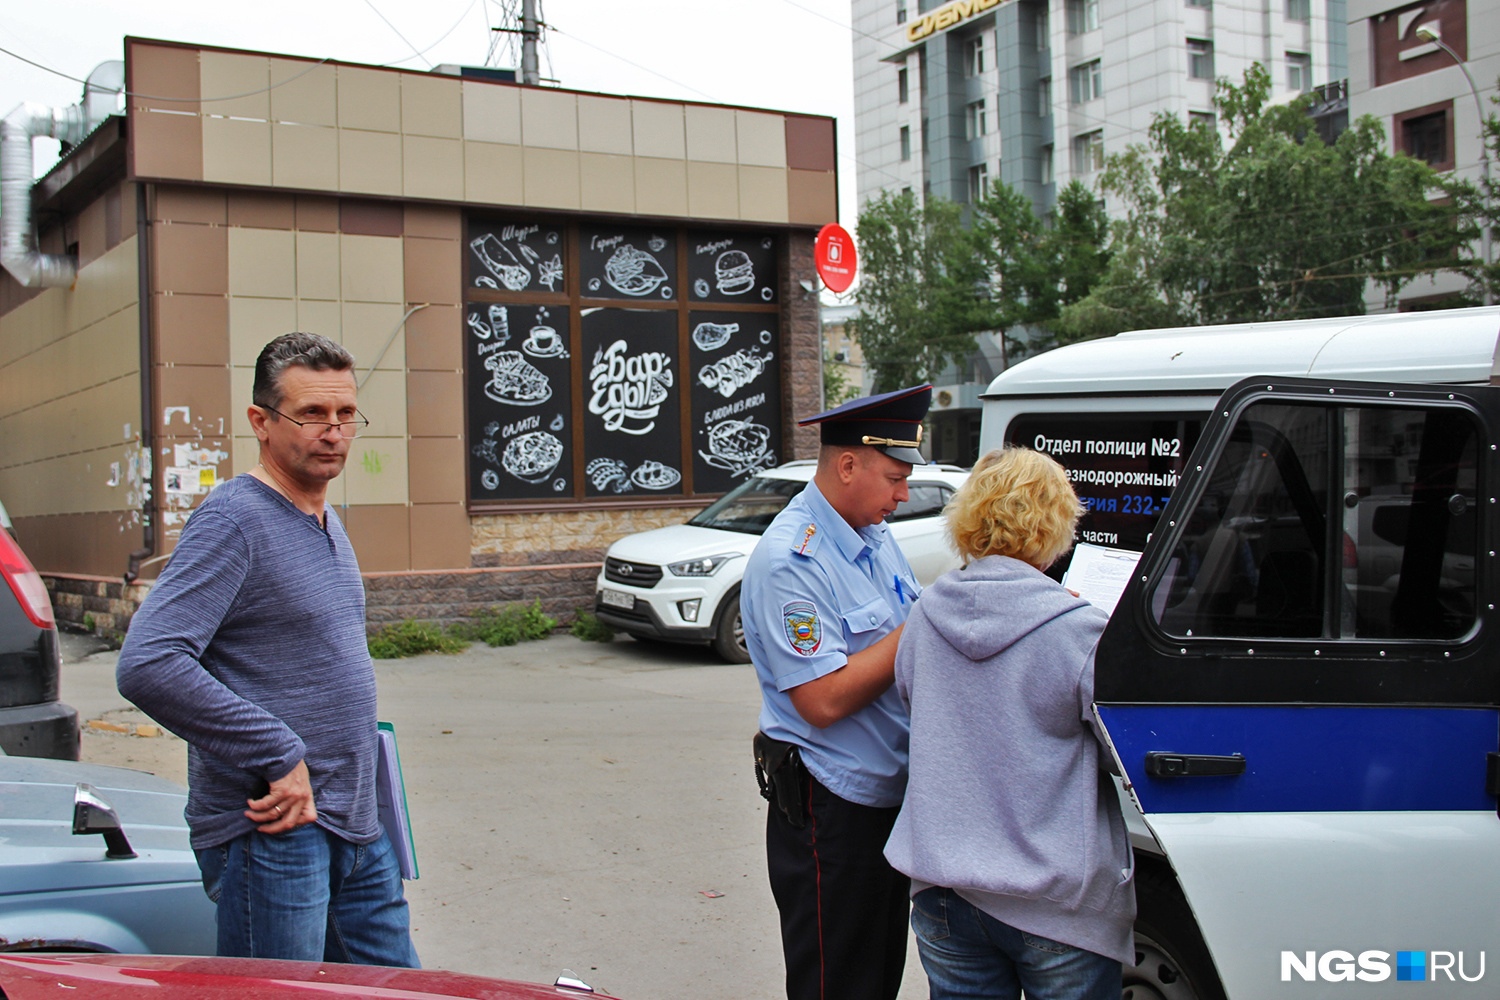 Приехавшая полиция опросила начальника службы эксплуатации ЦУМа Сергея Крюкова (слева на фото) и составила протокол